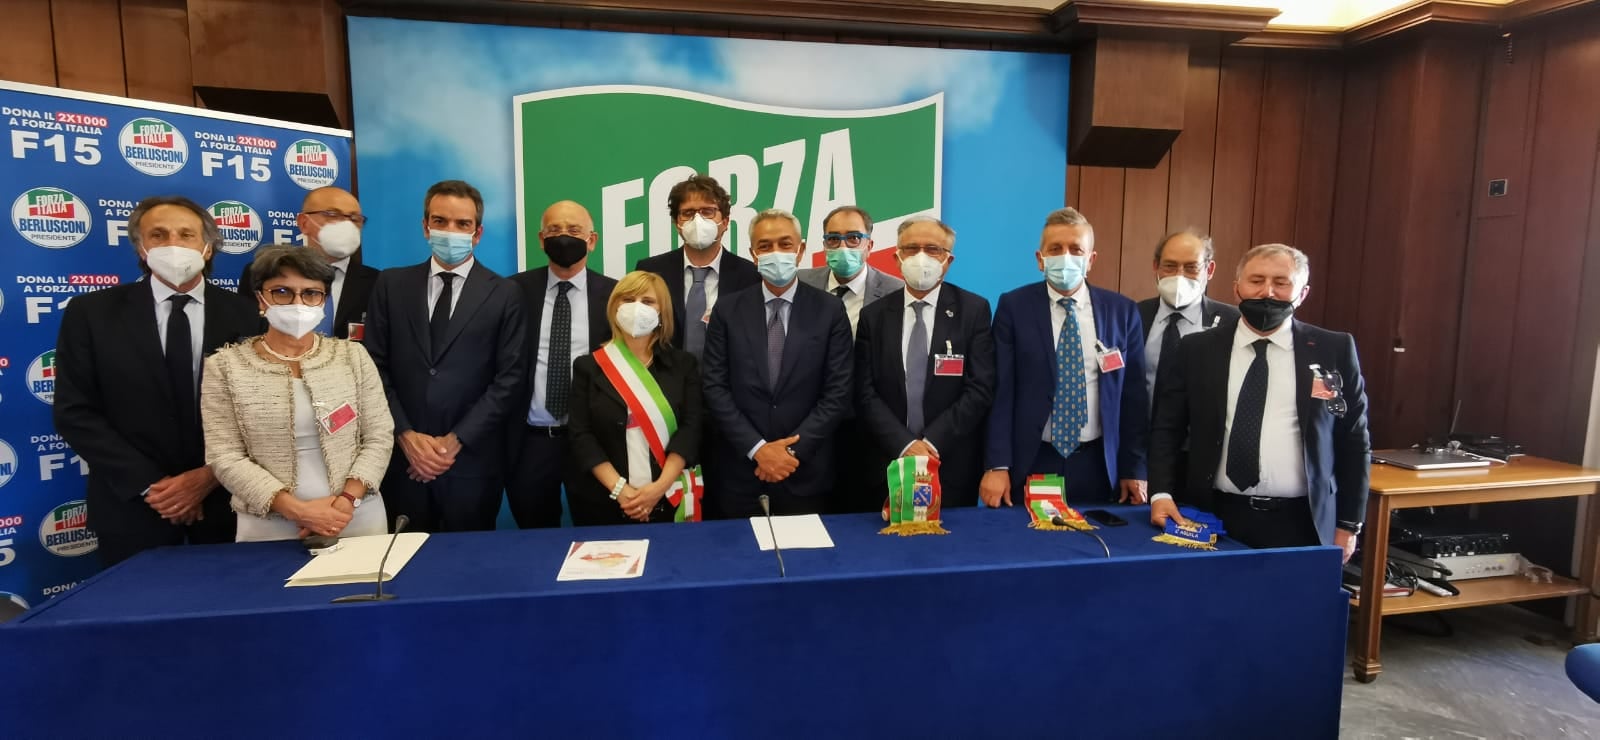 Tribunali minori Abruzzo, riunione di Forza Italia a Montecitorio, garantito sostegno alla proposta di rinvio  chiusura presidi abruzzesi